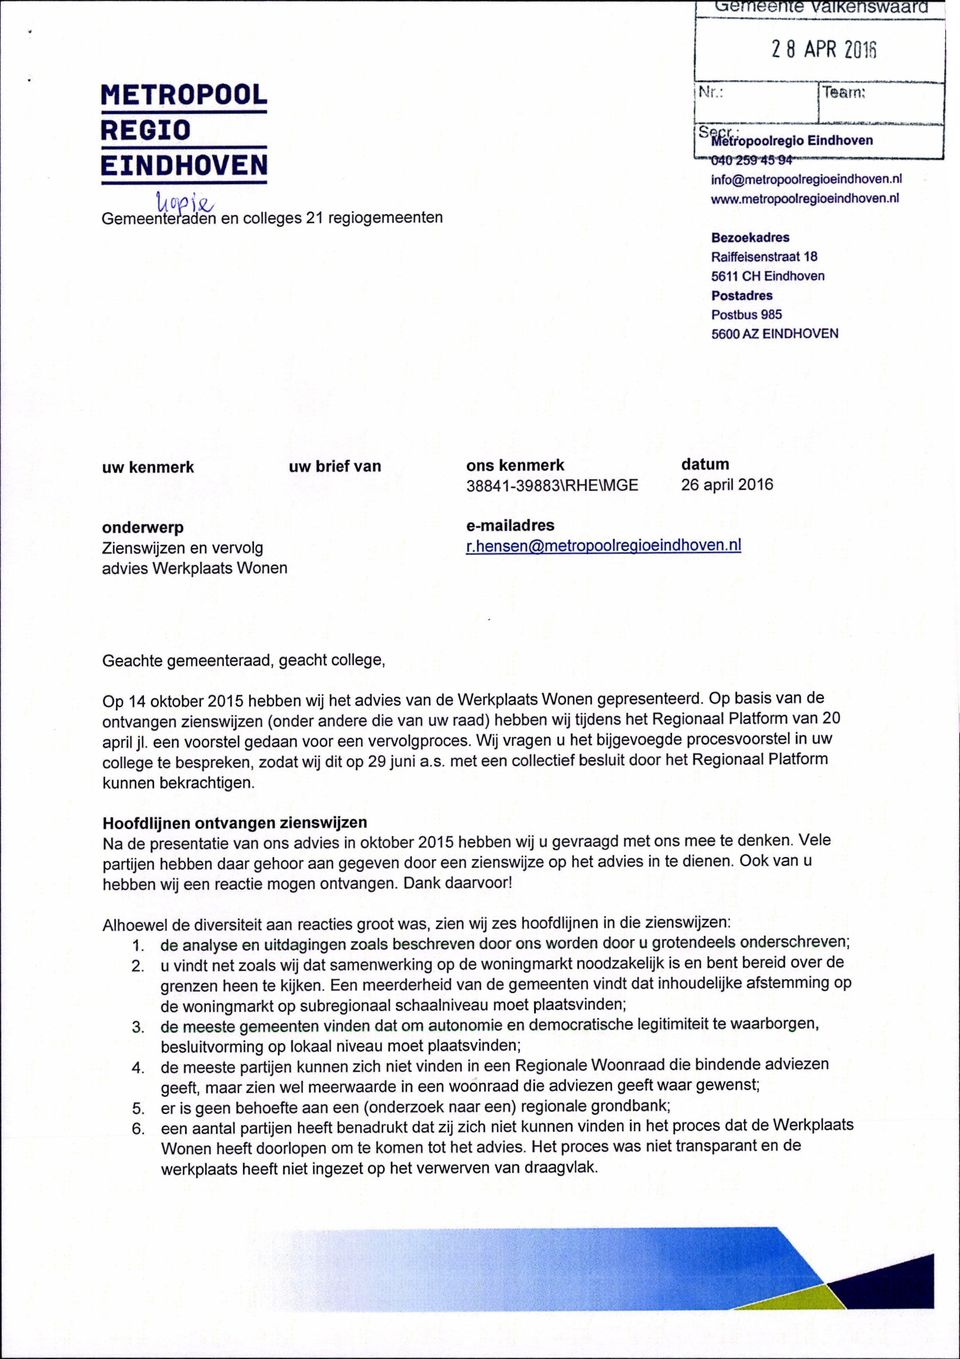 Werkplaats Wonen e-mailadres r.hensen@metropoolreaioeindhoven.nl Geachte gemeenteraad, geacht college, Op 14 oktober 2015 hebben wij het advies van de Werkplaats Wonen gepresenteerd.